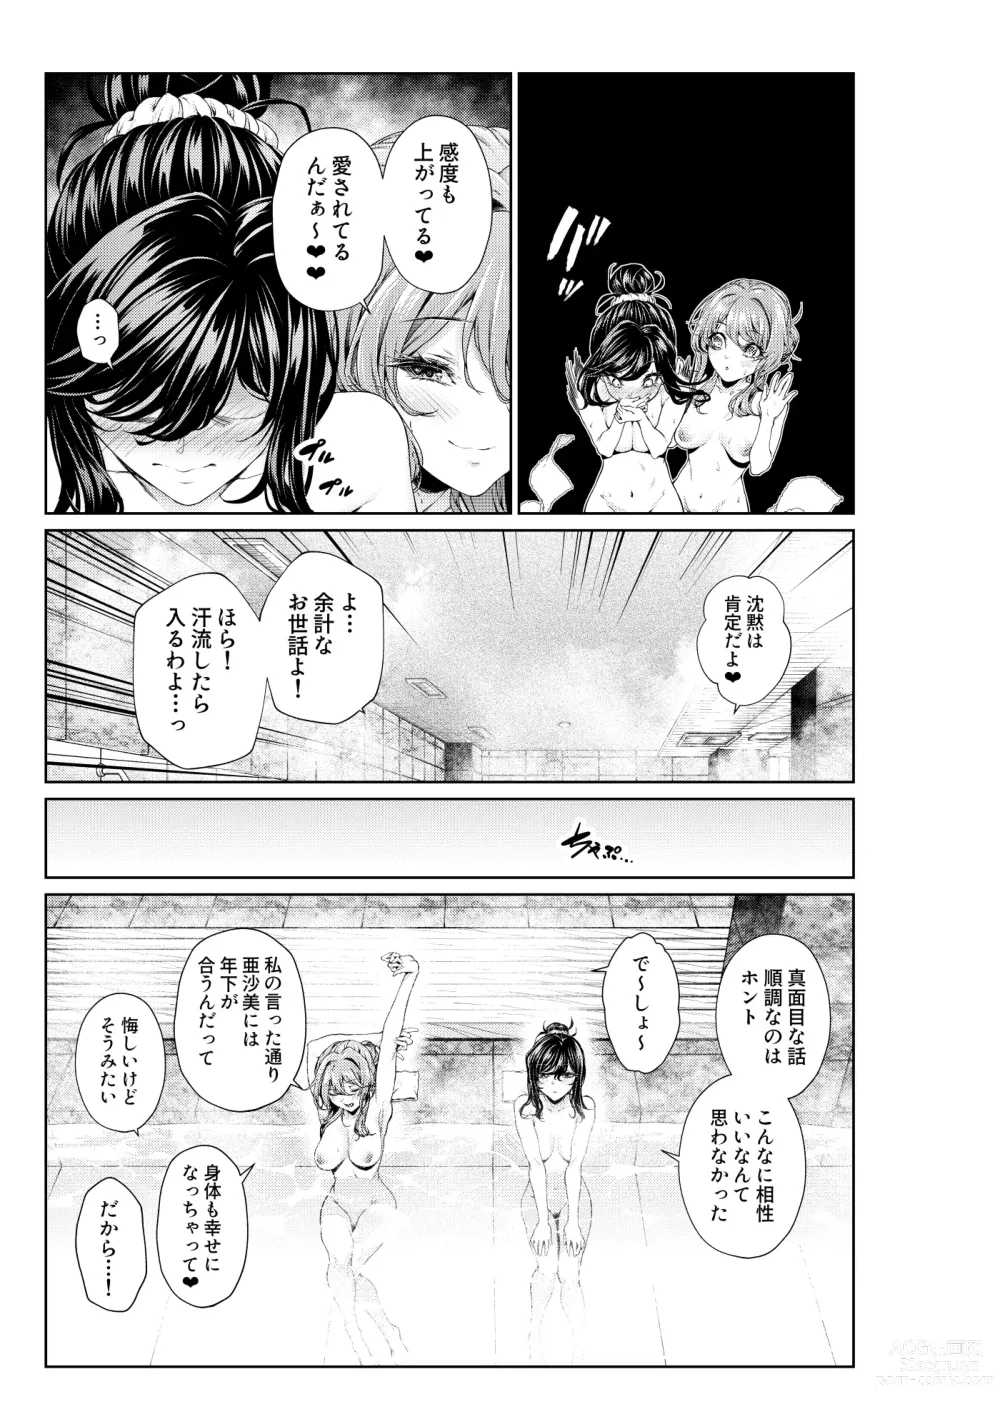 Page 3 of doujinshi Shokuba no Senpai: Senpai-tachi to Golf